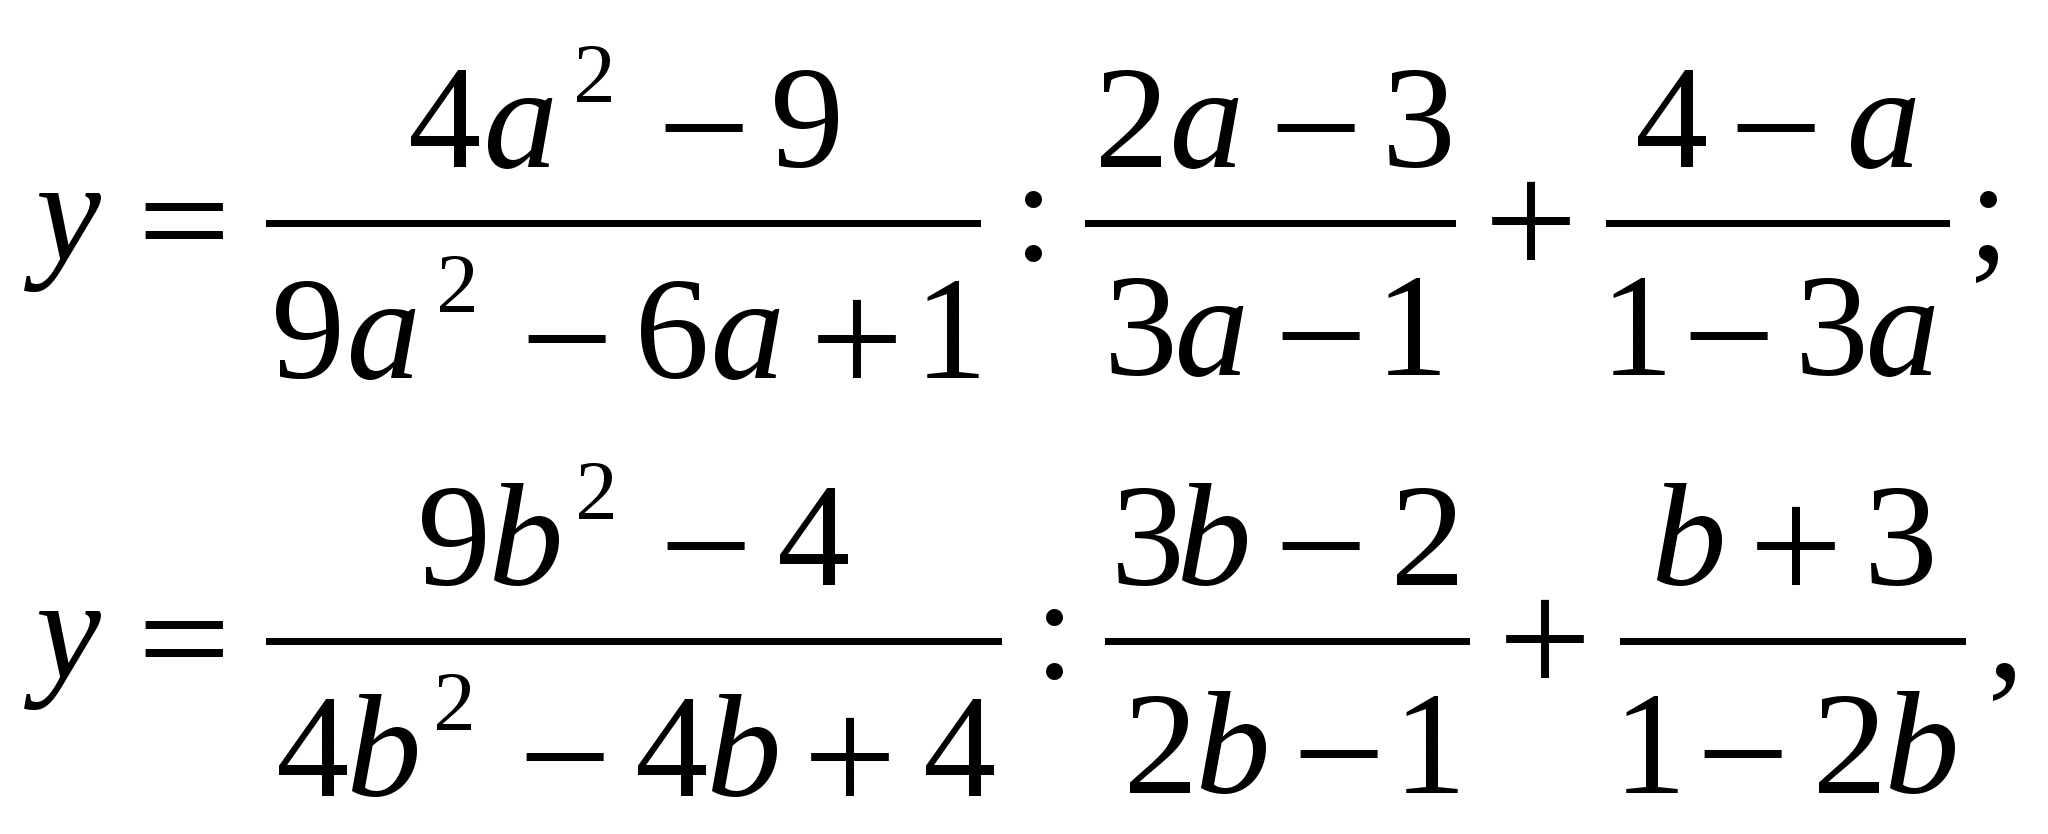 Конспект урока по алгебре в 8 классе по теме Преобразование рациональных выражений в виде математического кафе